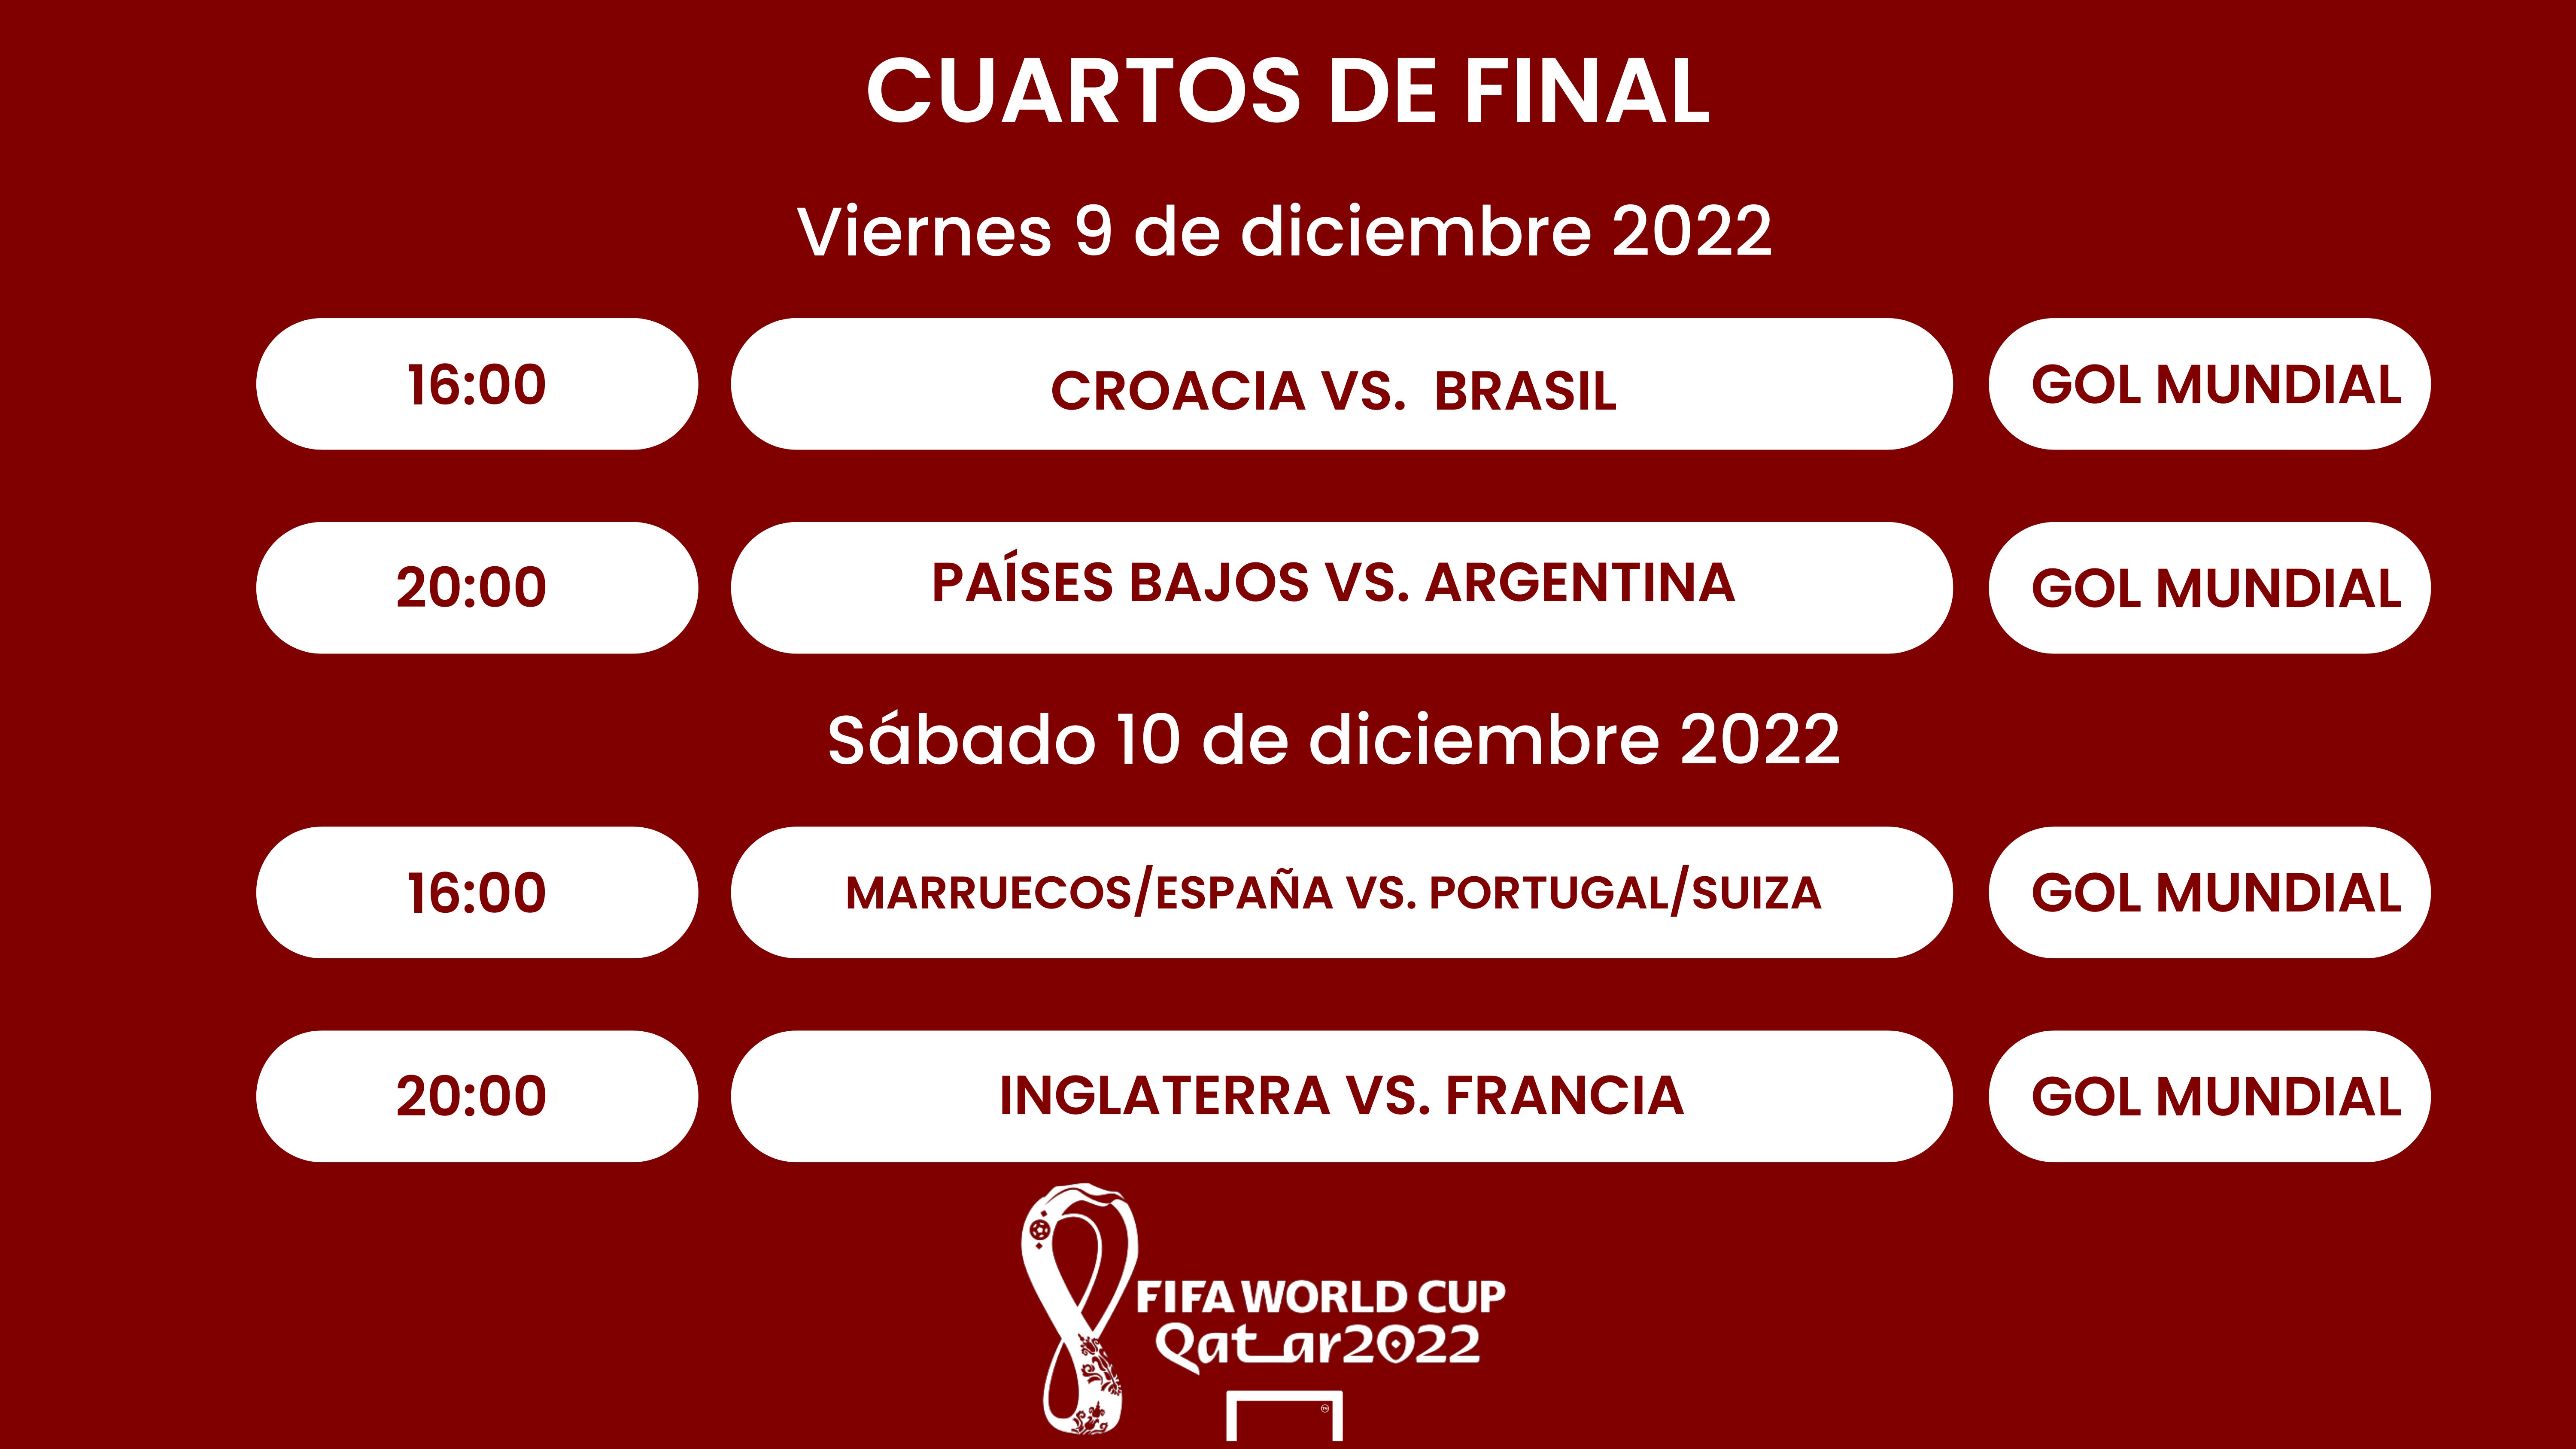 Cuartos de del Mundial Qatar 2022: Cuándo son, selecciones clasificadas, partidos, fechas, horarios y resultados | Goal.com Espana